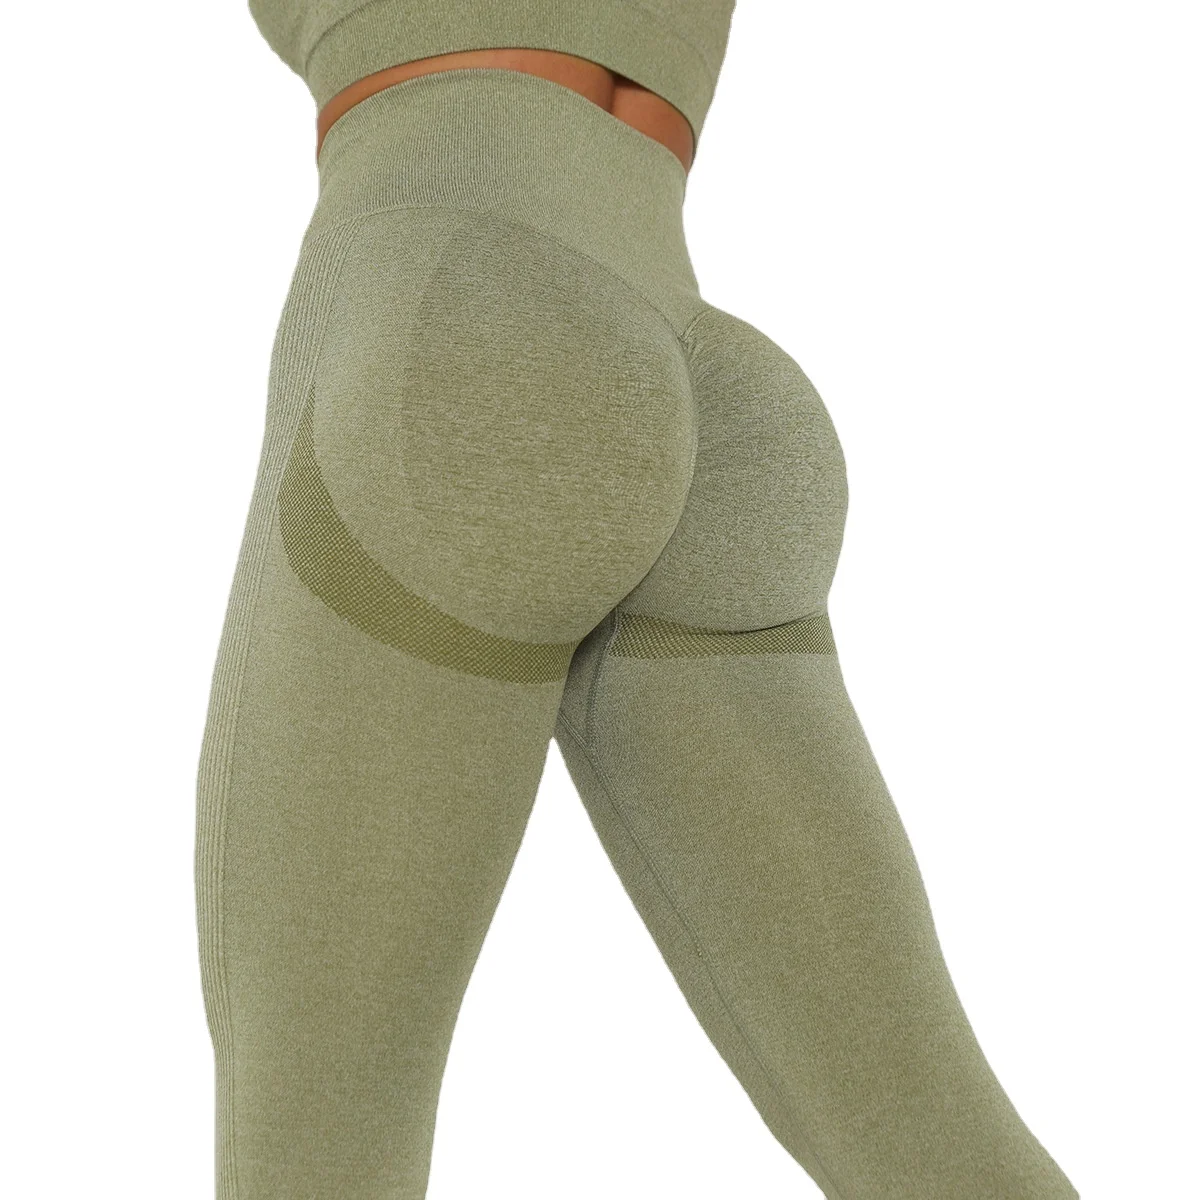 

Women's High Waisted Moisture Wicking Sexy Comfort Soft Butt Lift Seamless Workout Leggings Yoga Pants